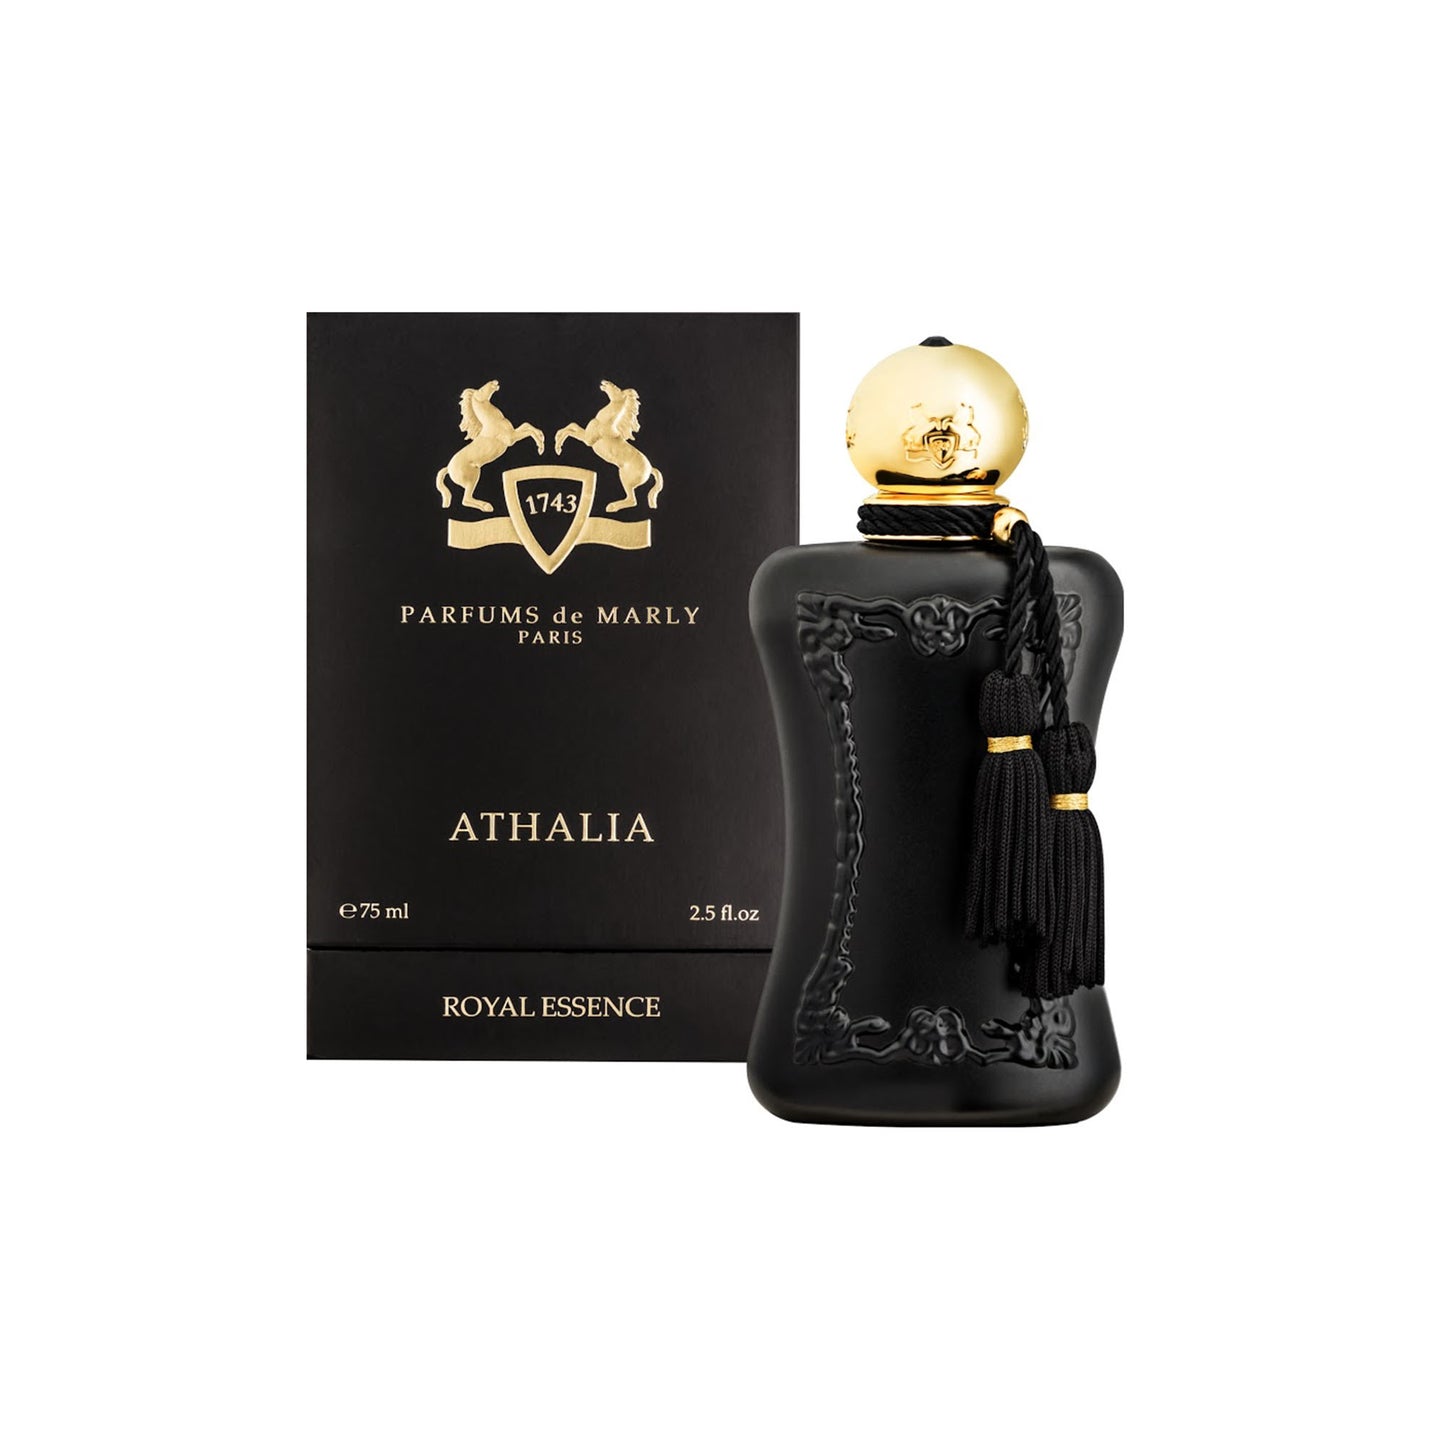 ATHALIA 2.5 oz Eau de Parfum